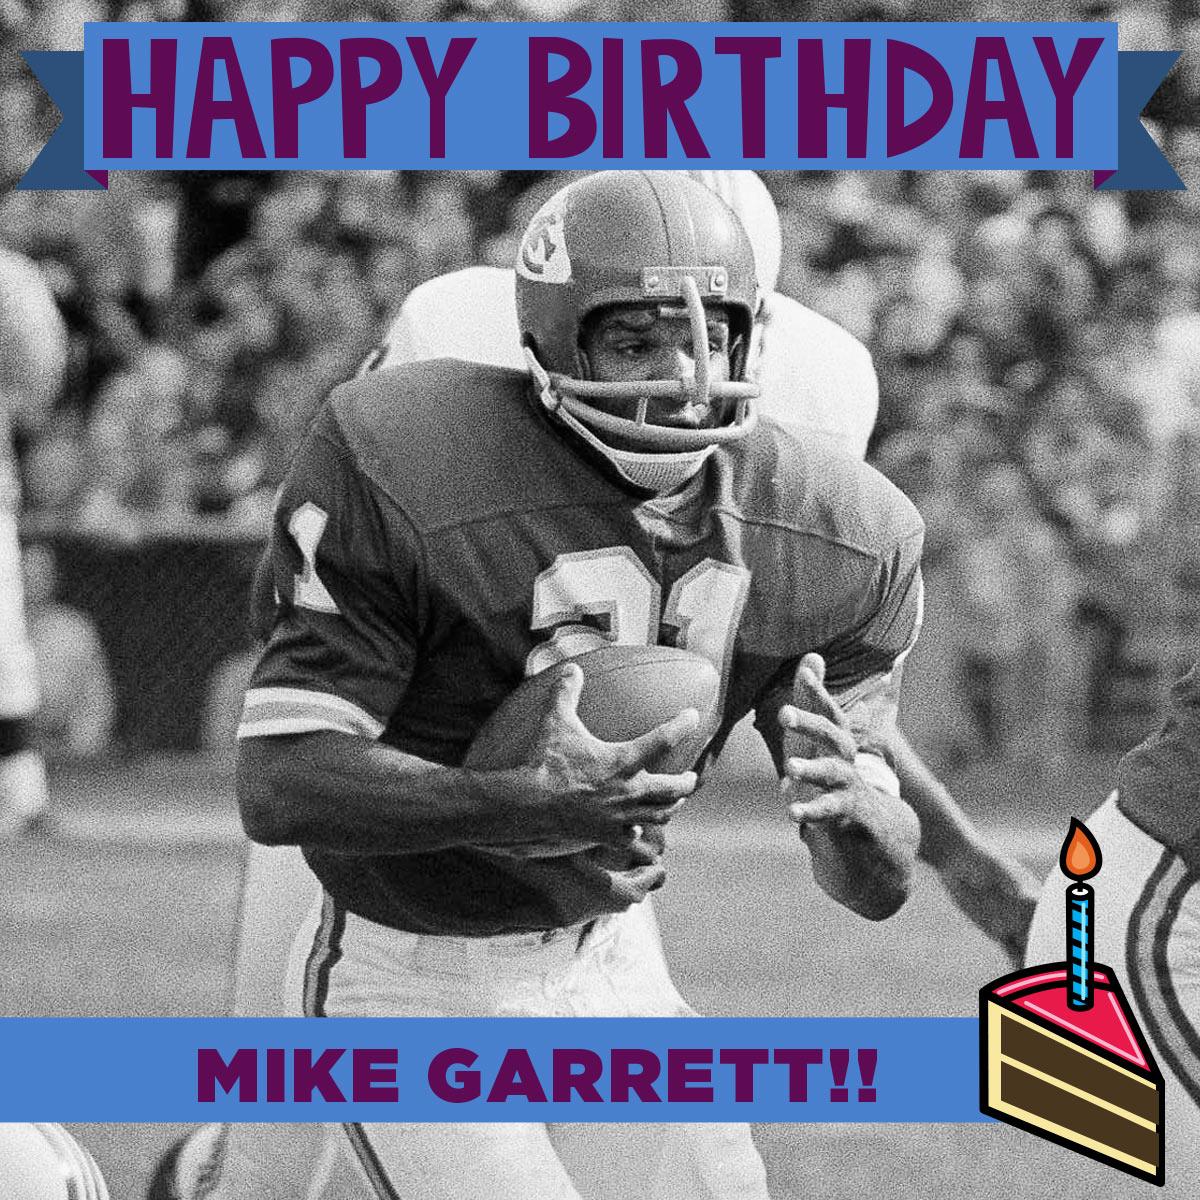 Happy Birthday to champion Mike Garrett!  